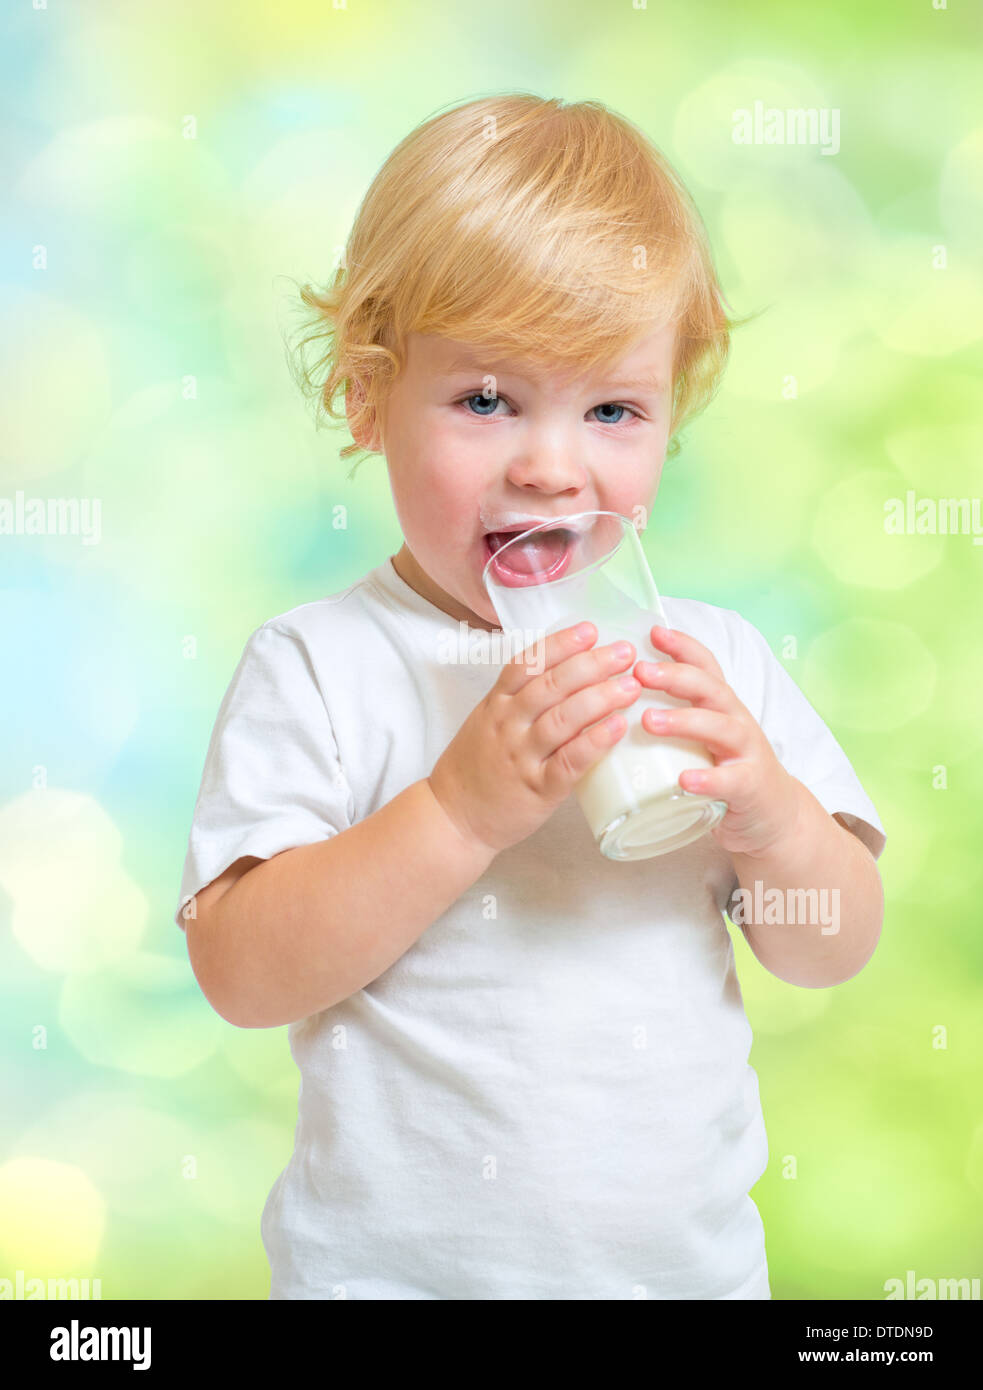 Kind trinken Milchprodukt aus Glas Stockfoto